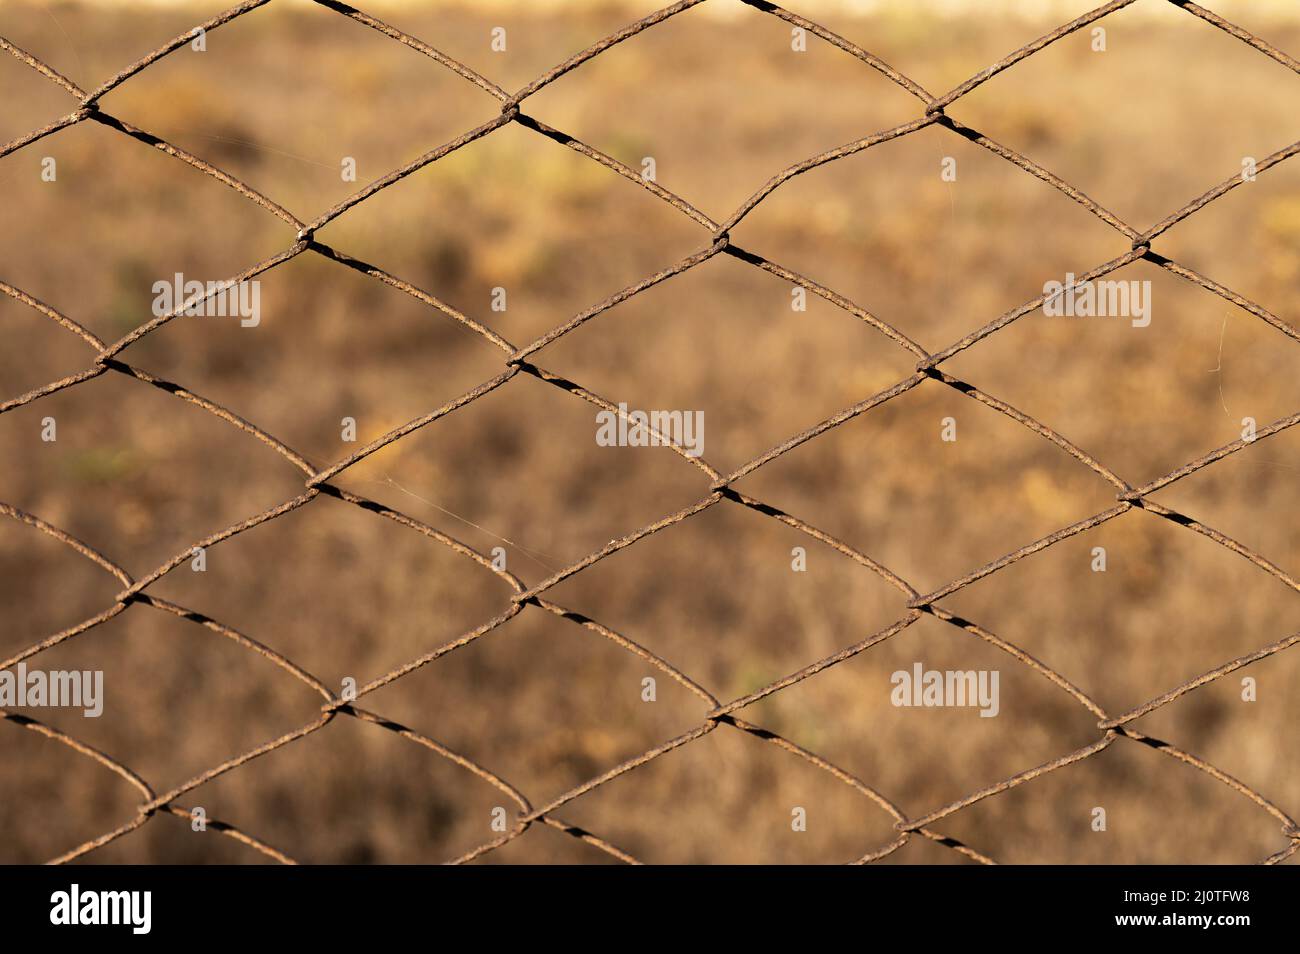 Rostiges Mesh-Netz auf einem Hintergrund aus trockenem Gras, das nicht im Fokus steht. Grunge industriellen Hintergrund Stockfoto